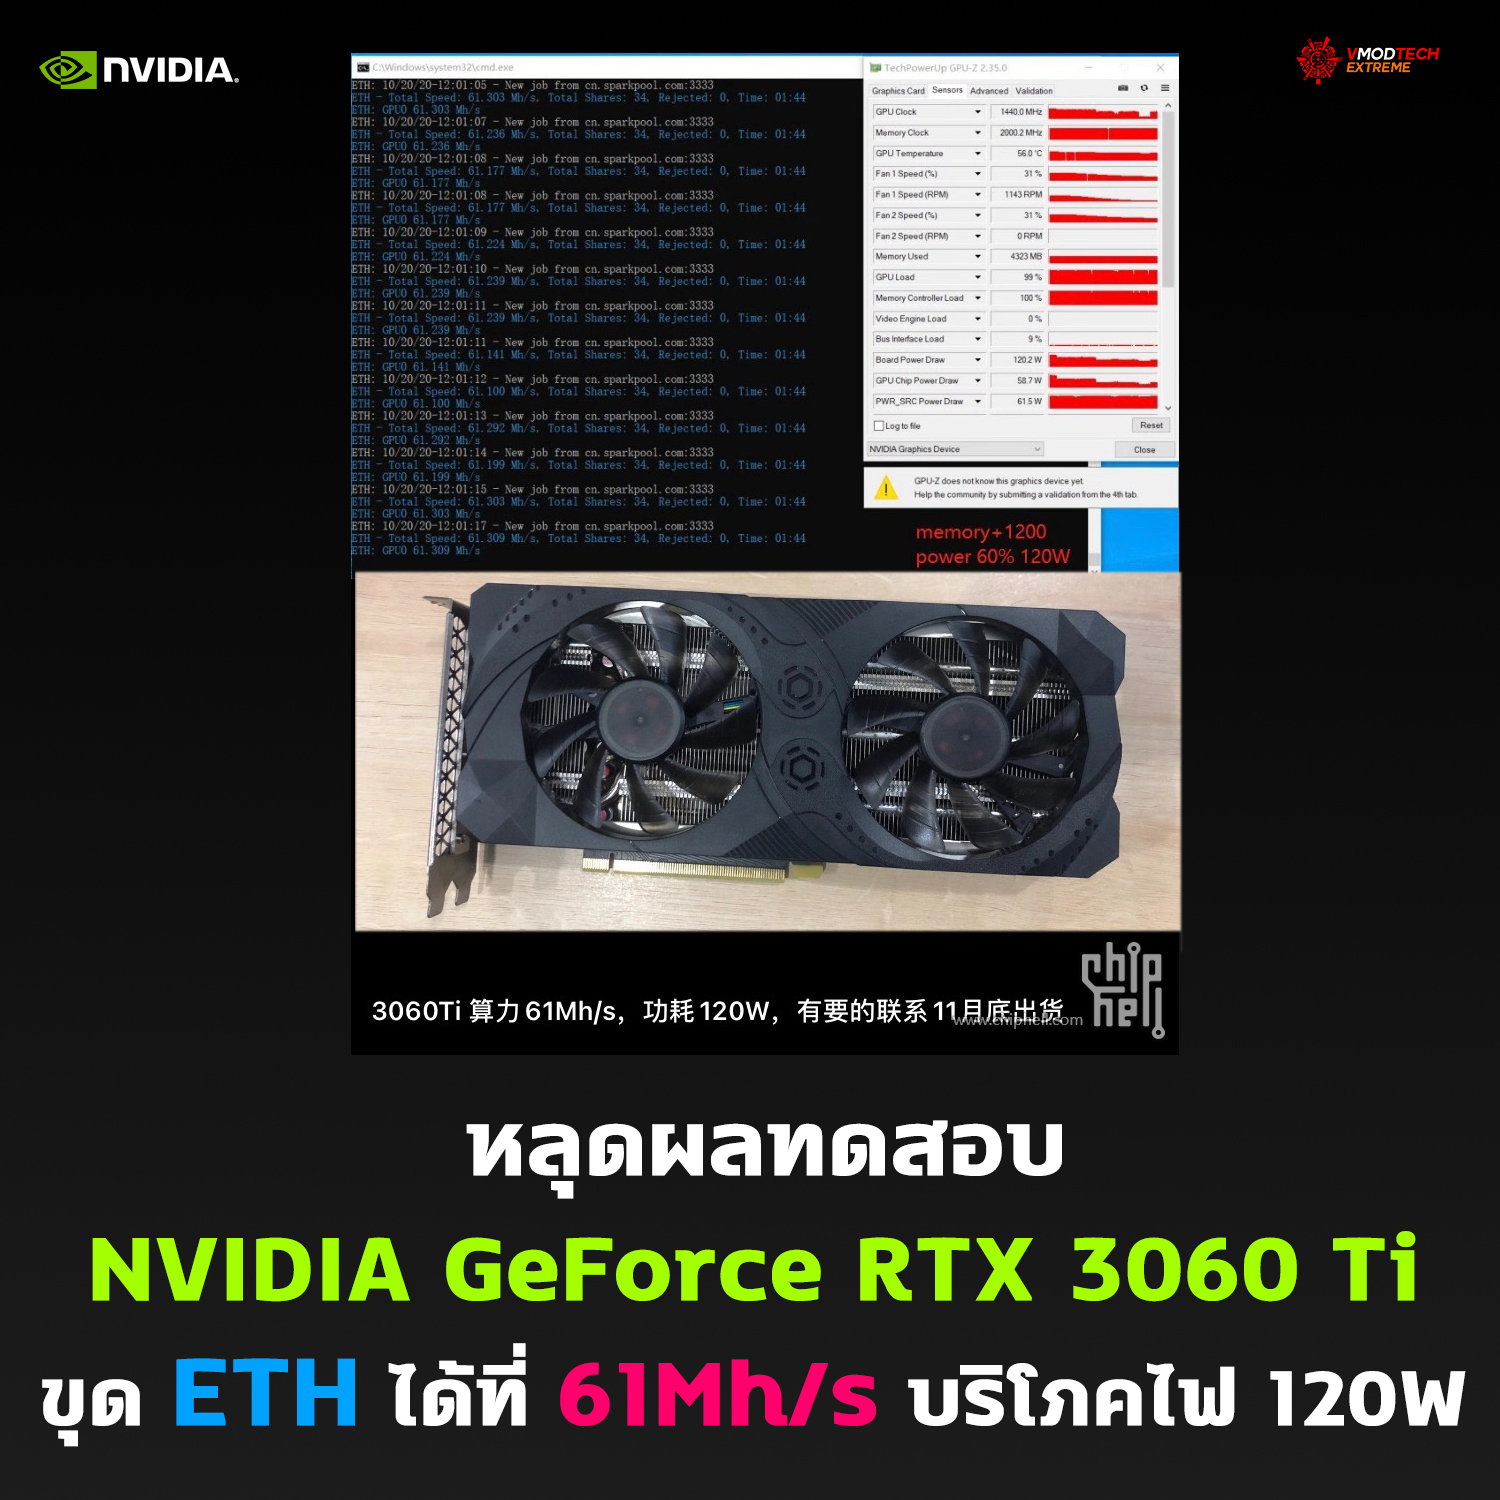 หลุดผลทดสอบ NVIDIA GeForce RTX 3060 Ti ขุด ETH ได้ที่ 61Mh/s 